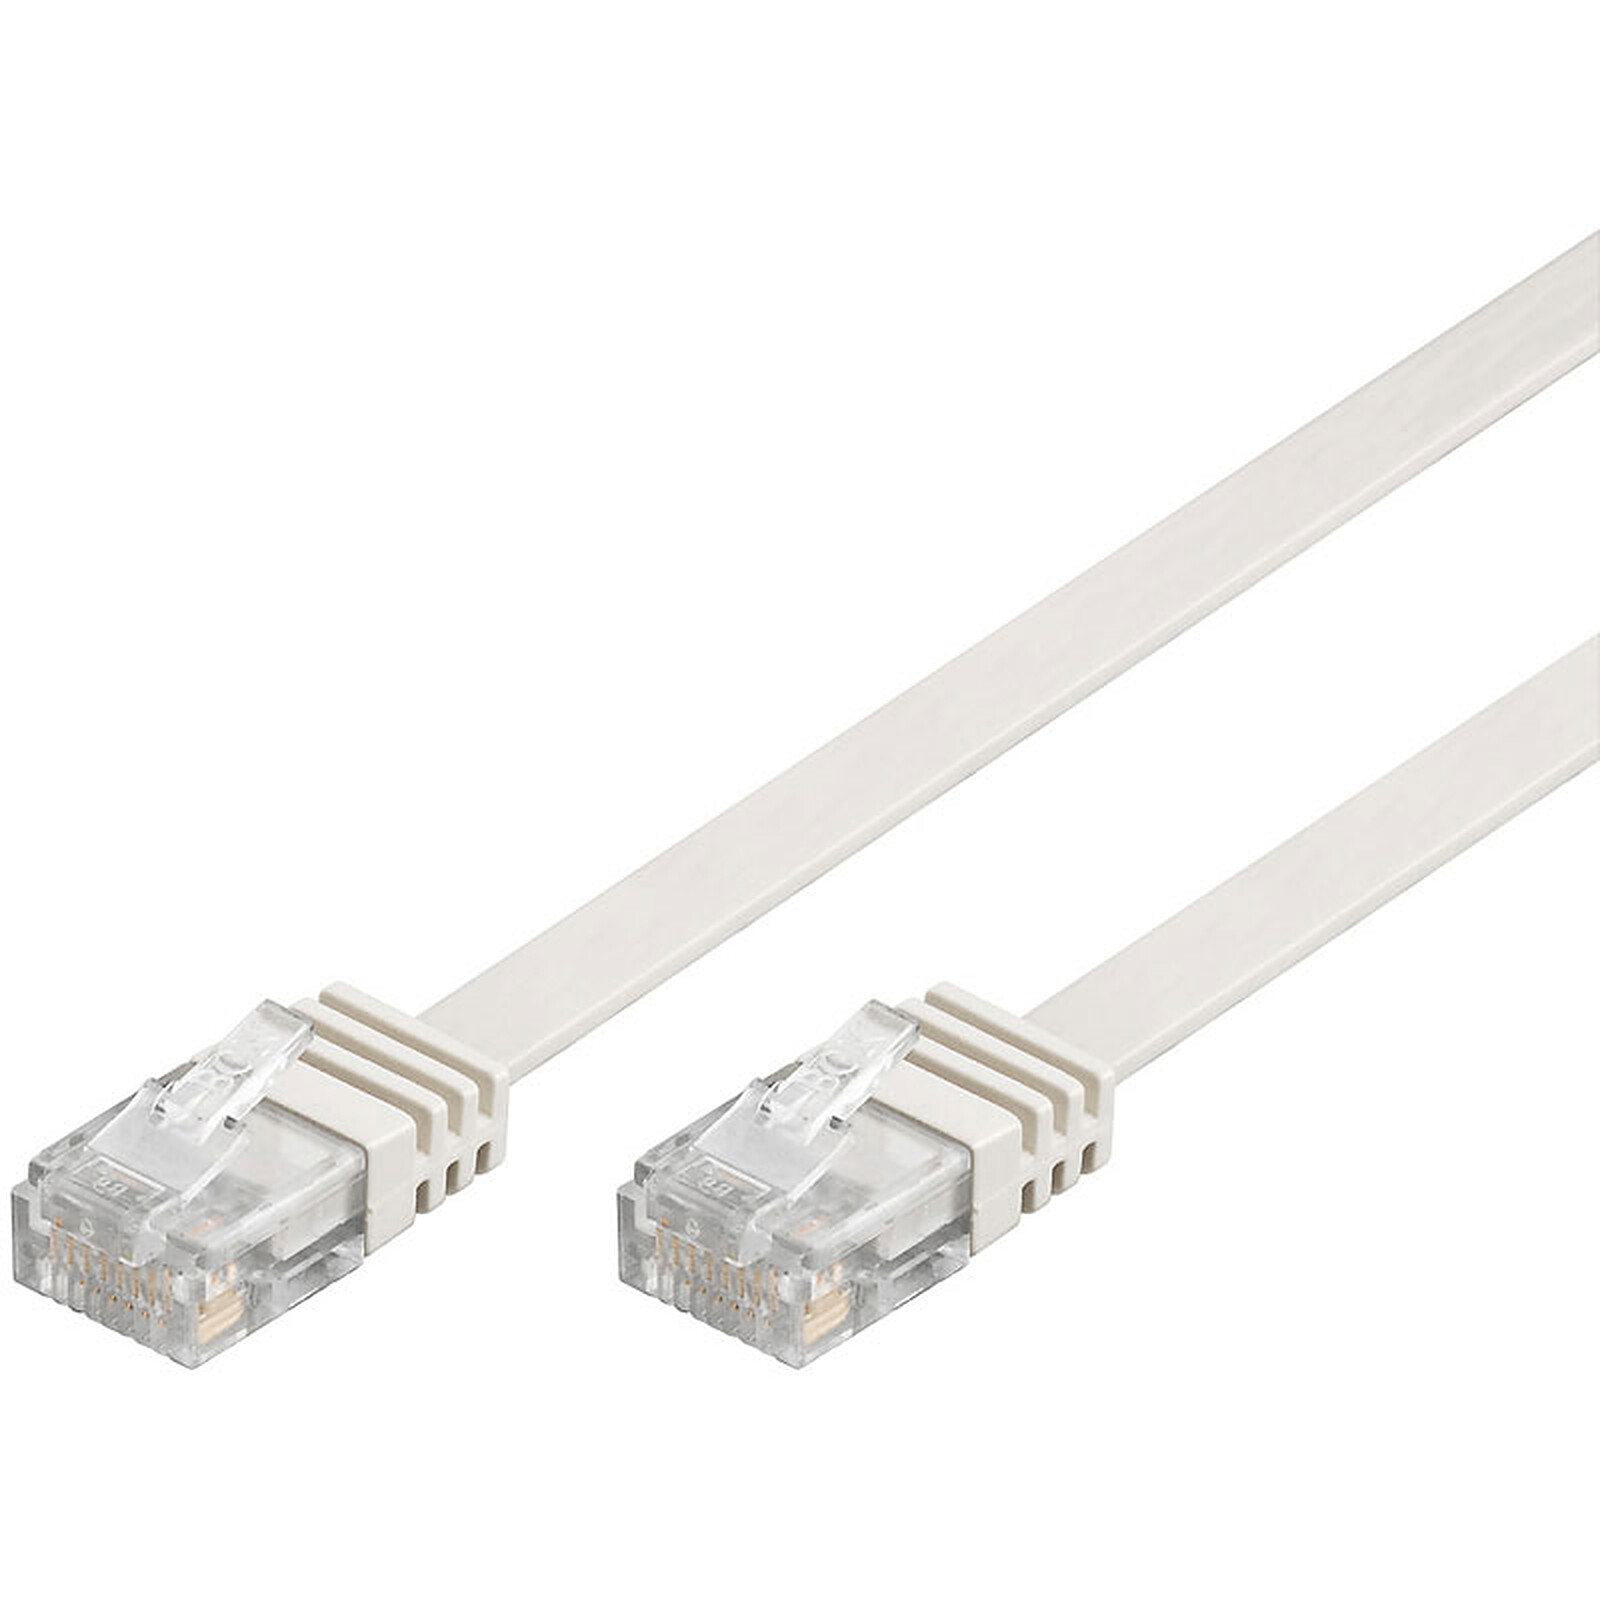 Generic Câble Réseau Ethernet Cat 6E RJ45 15m - Blanc - Prix pas